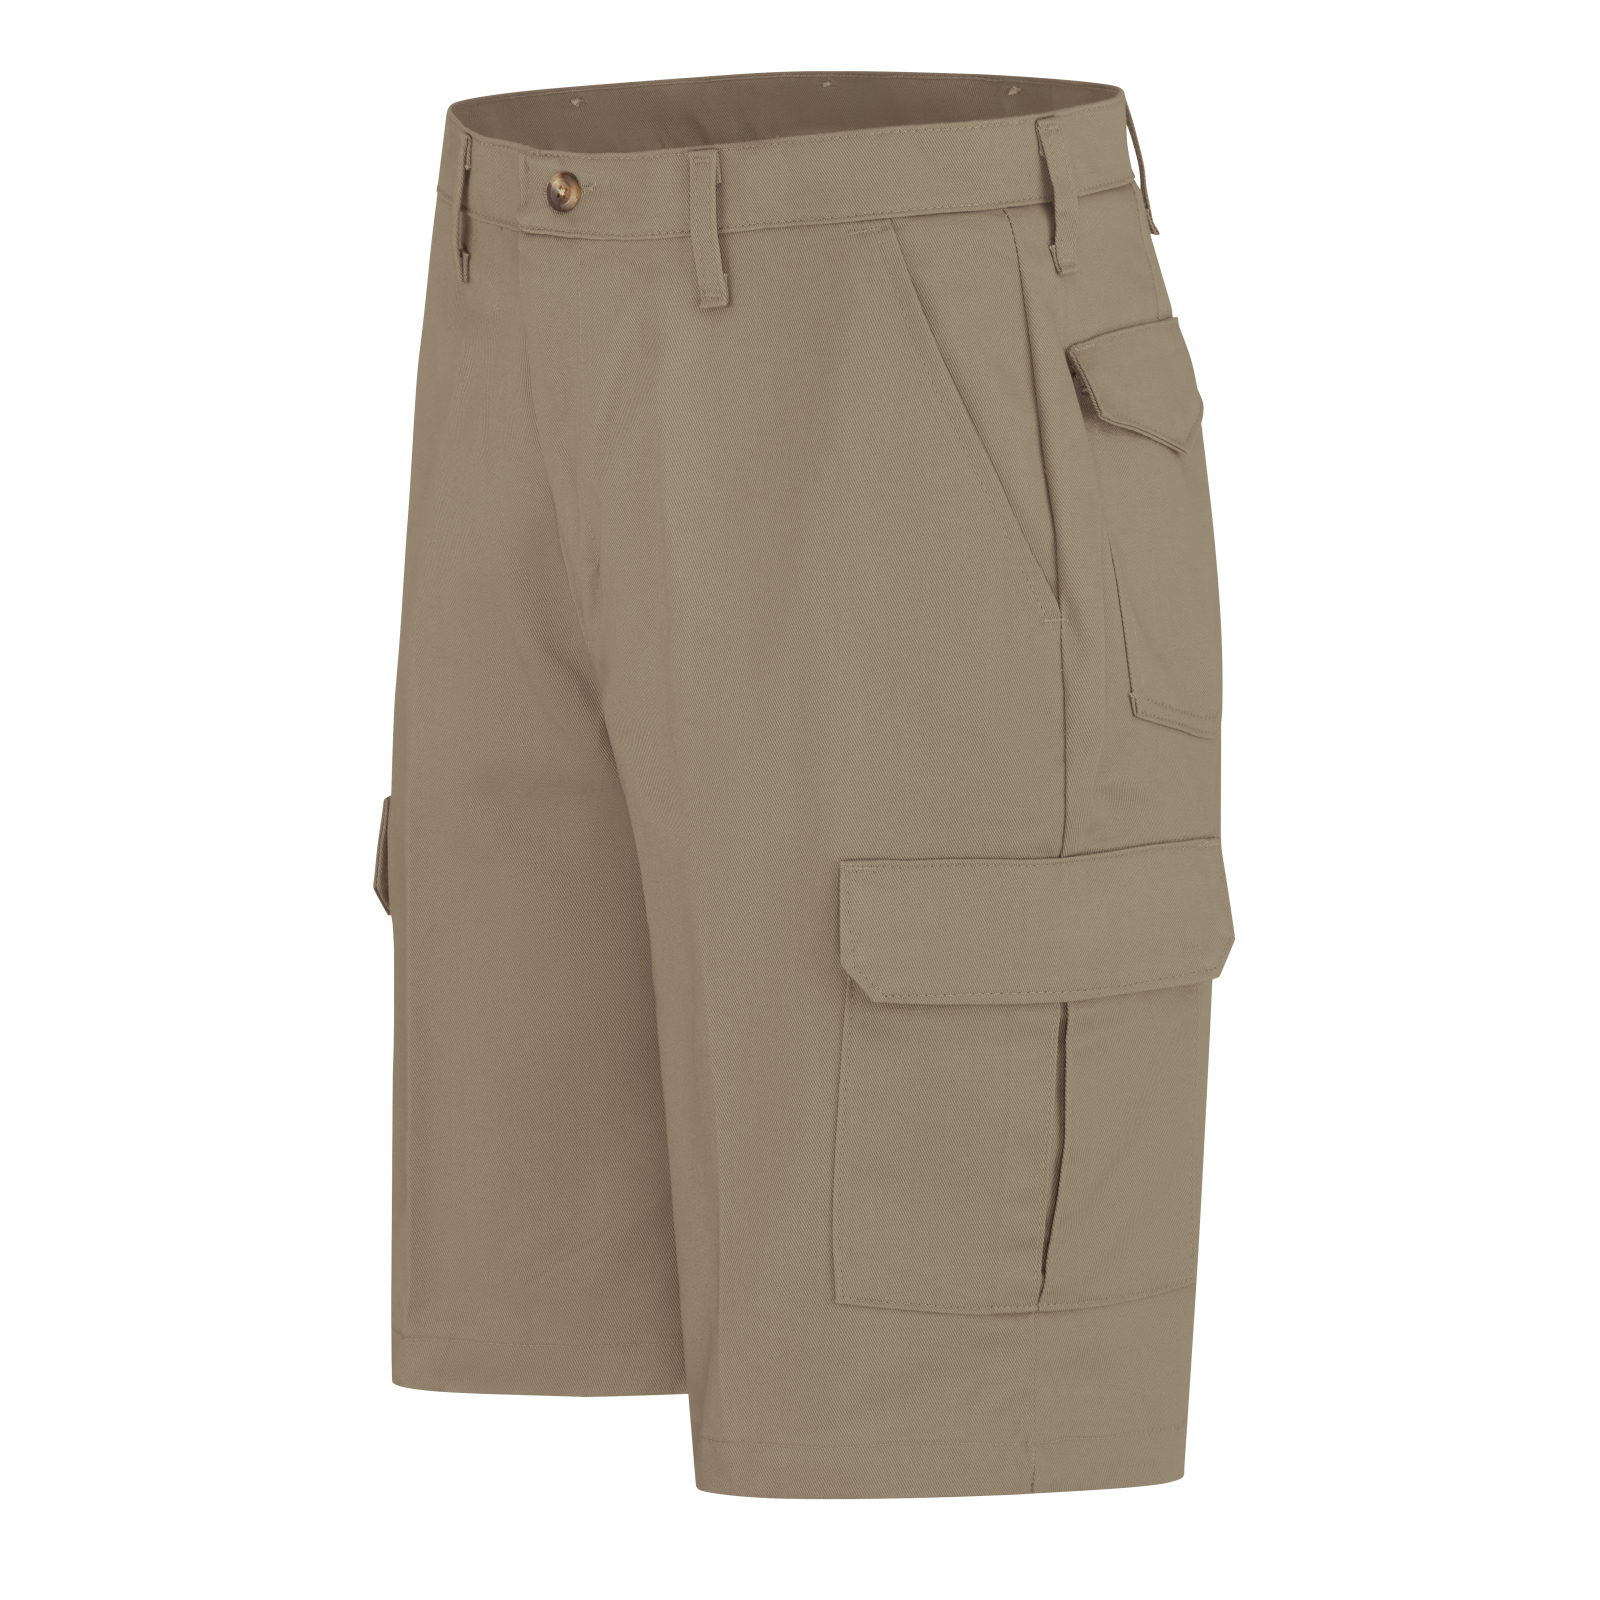 Buy Mens Short Pants Online | Shop Cotton Short Pants & 3/4ths for Men |  Best Shorts for Men Collection | Ramraj Cotton